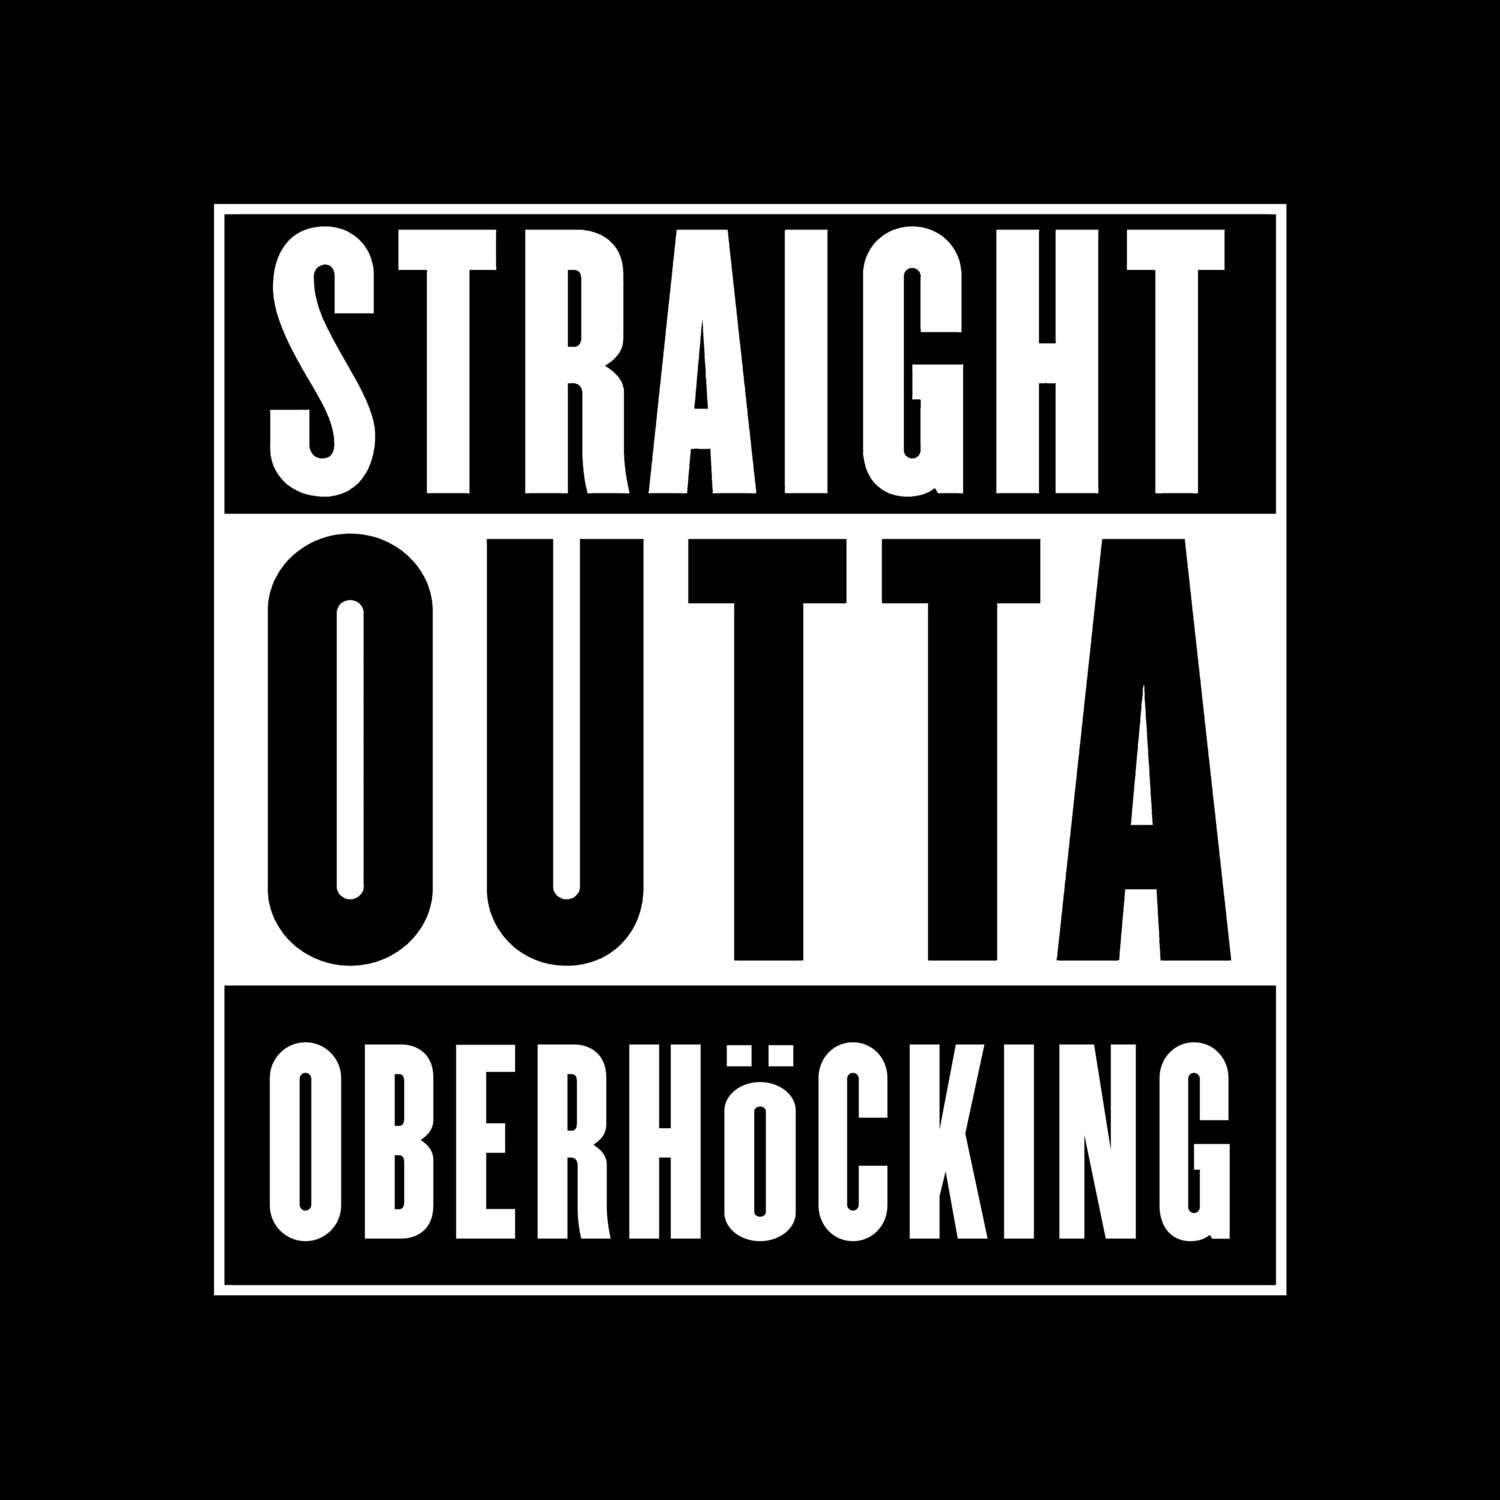 Oberhöcking T-Shirt »Straight Outta«